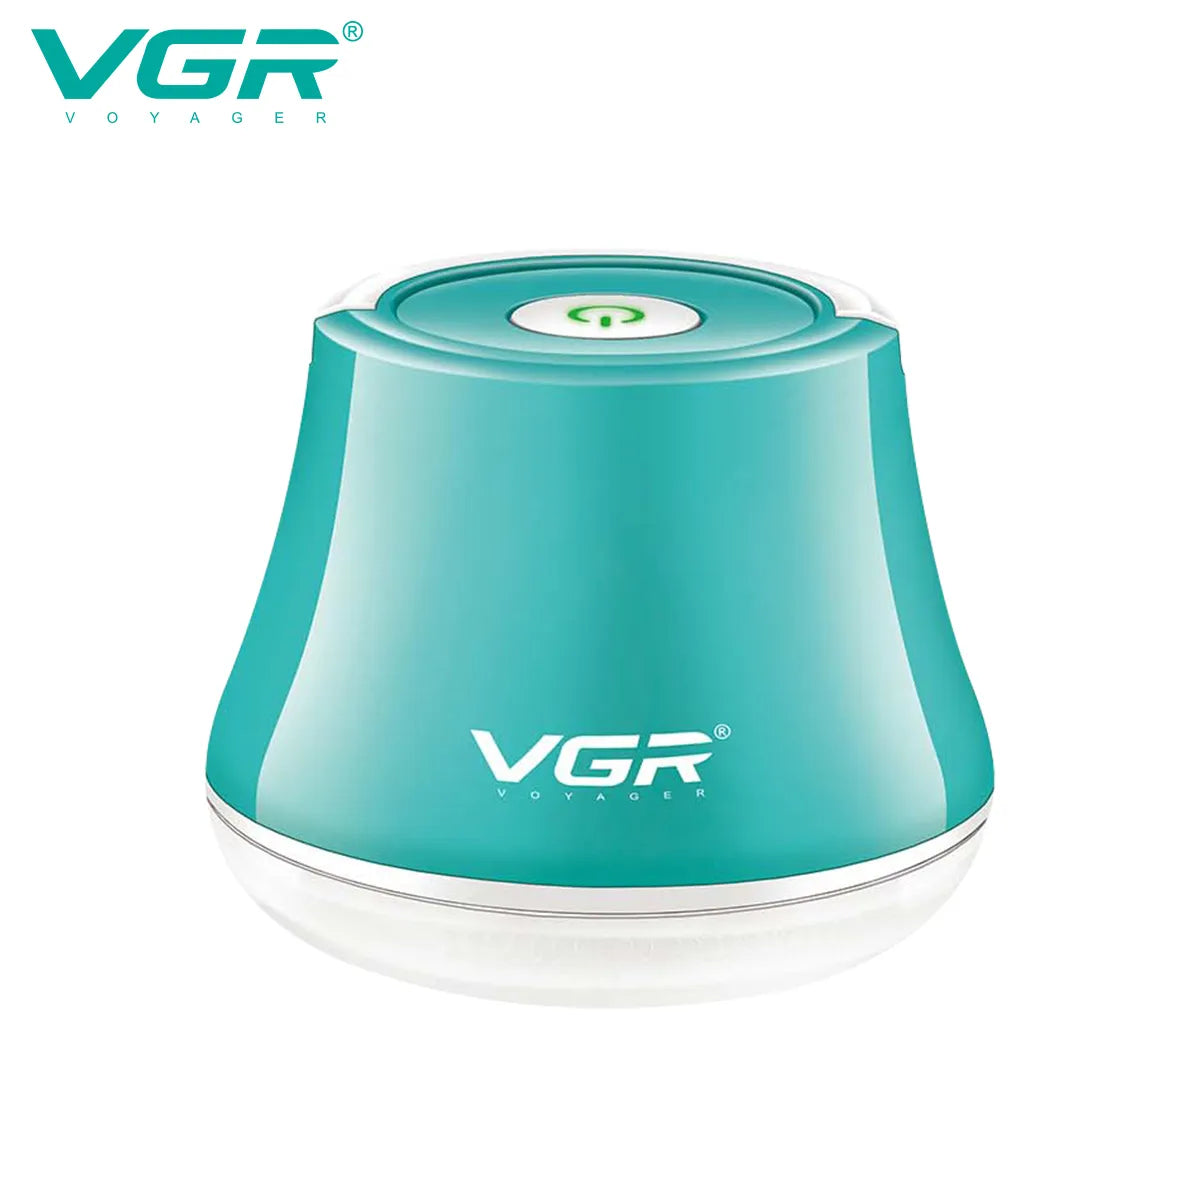 VGR, VGRindia, VGRofficial, VGR V-810